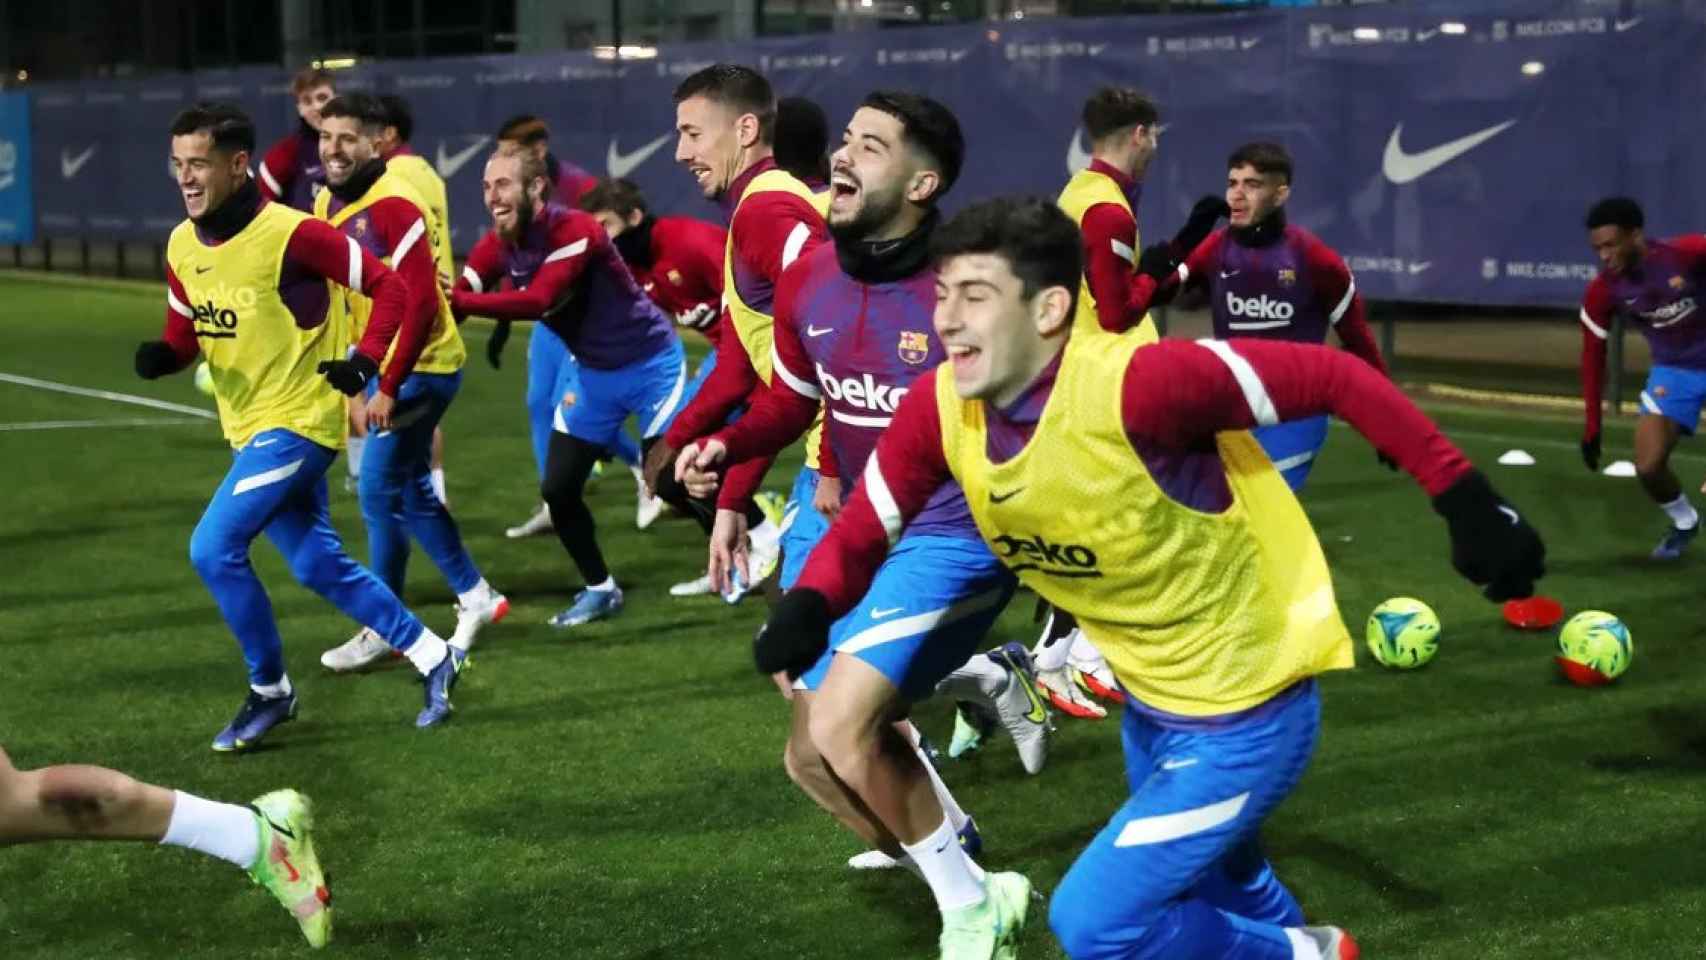 El Barça de Xavi recuperará a un crack a comienzos del 2022 / FCB